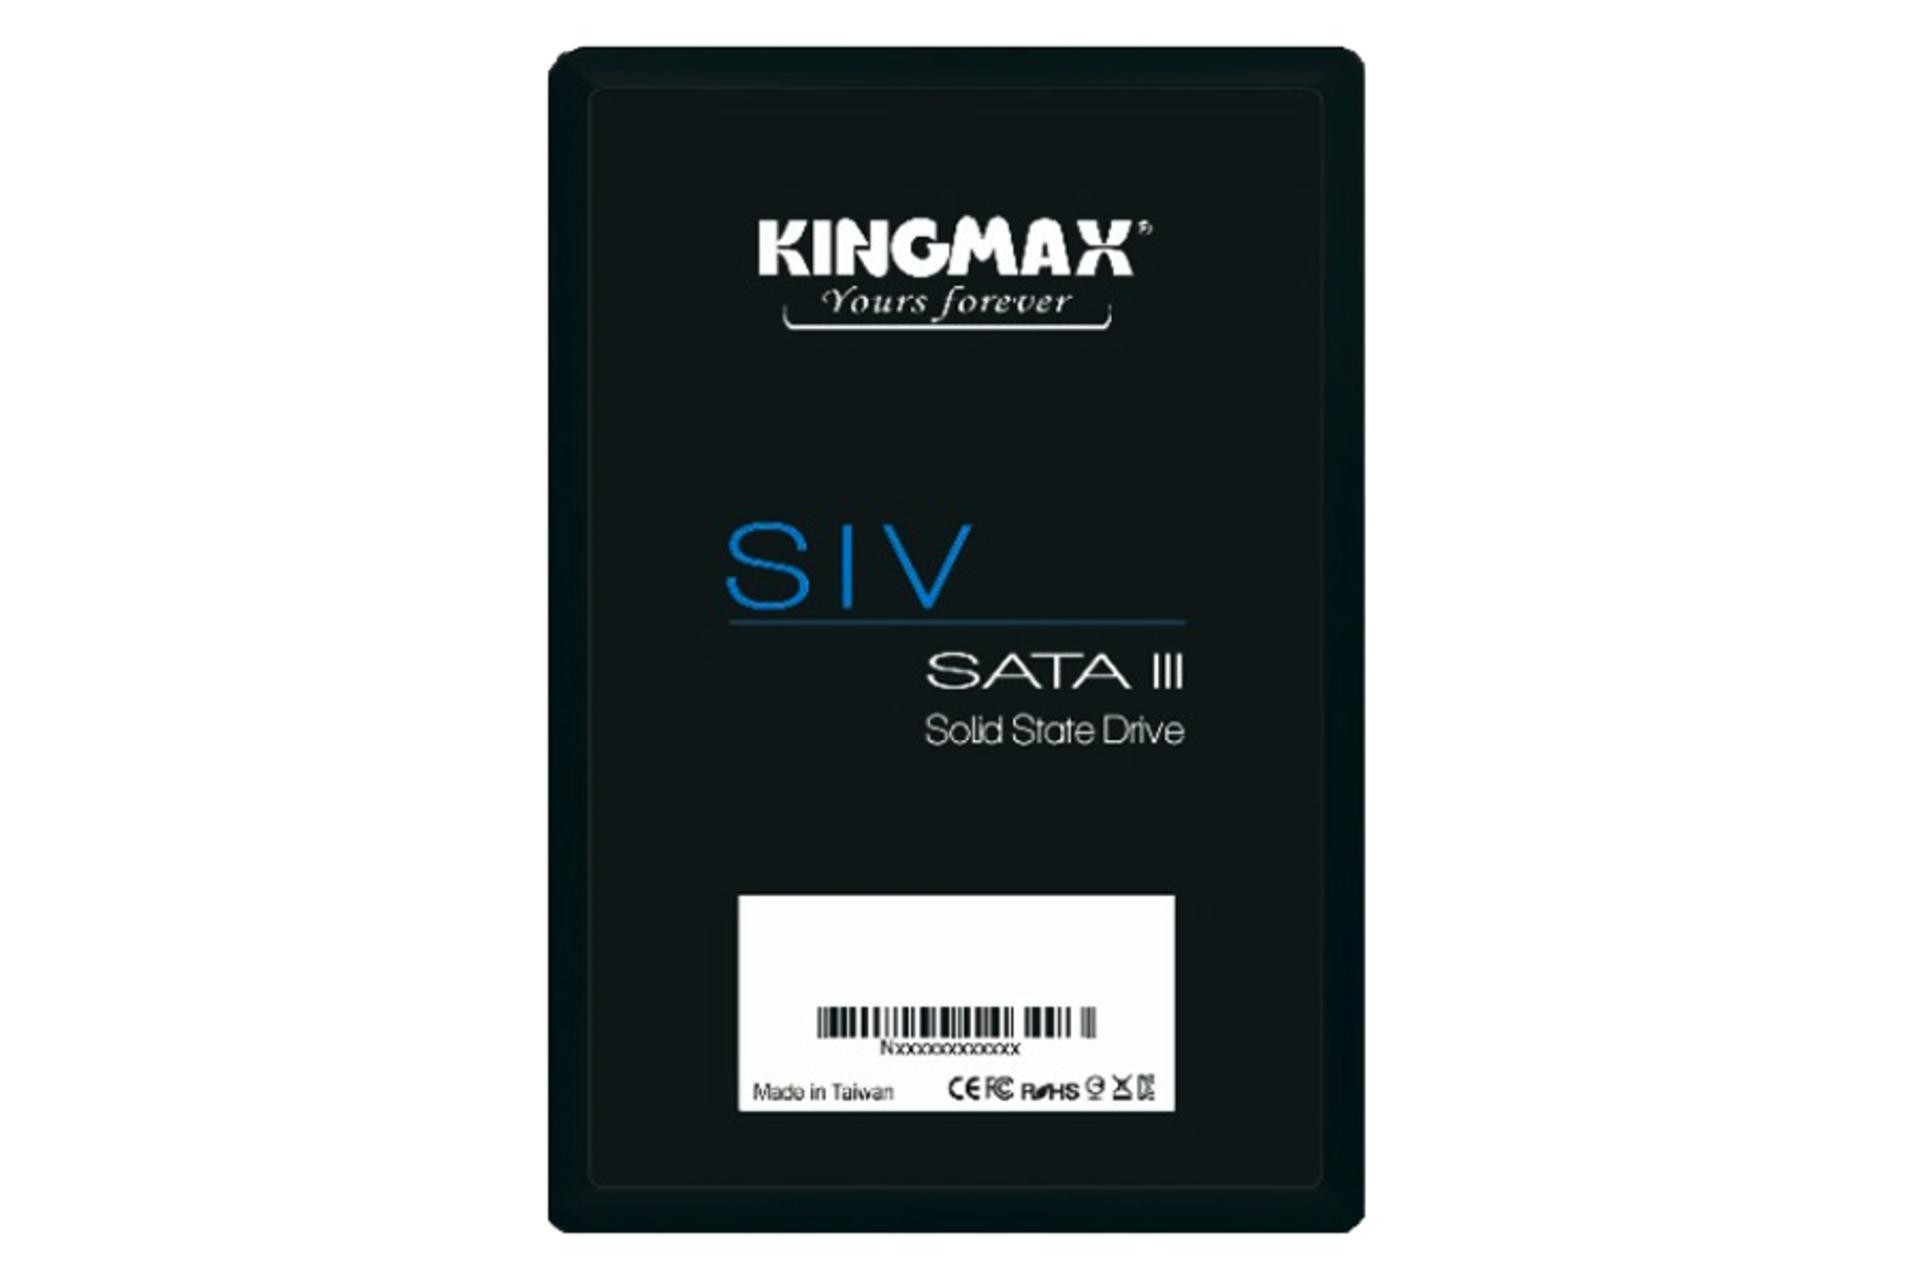 مرجع متخصصين ايران ابعاد SSD كينگ مكس SIV SATA 2.5 Inch ظرفيت 128 گيگابايت